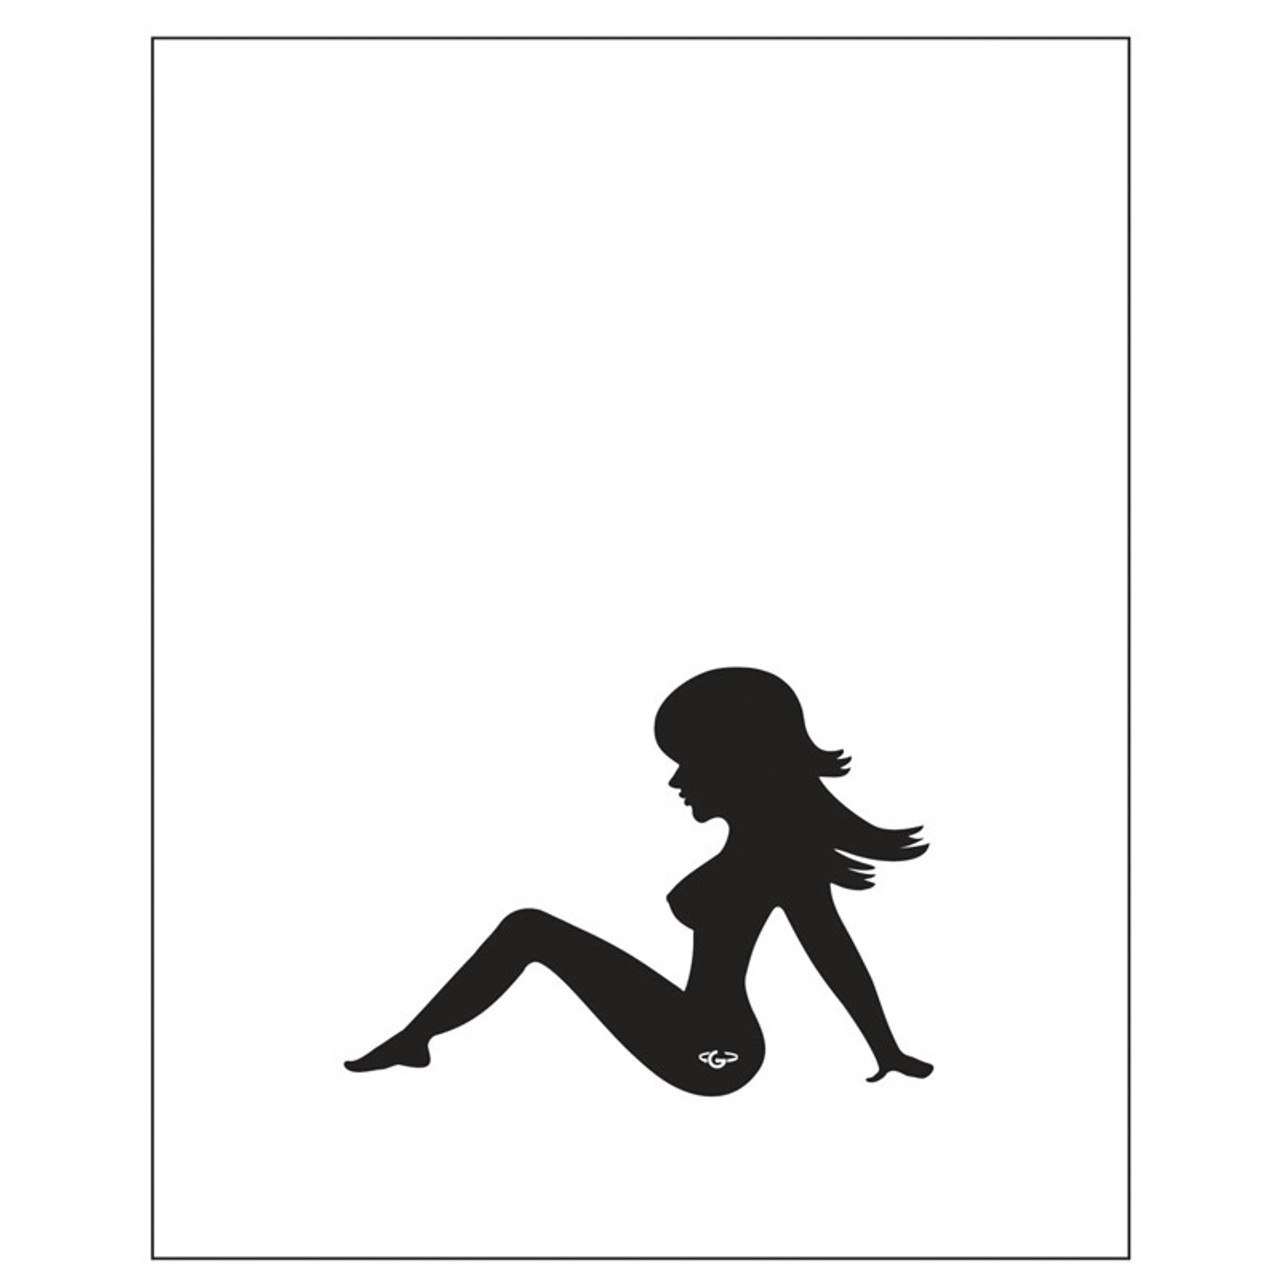 trucker girl logo